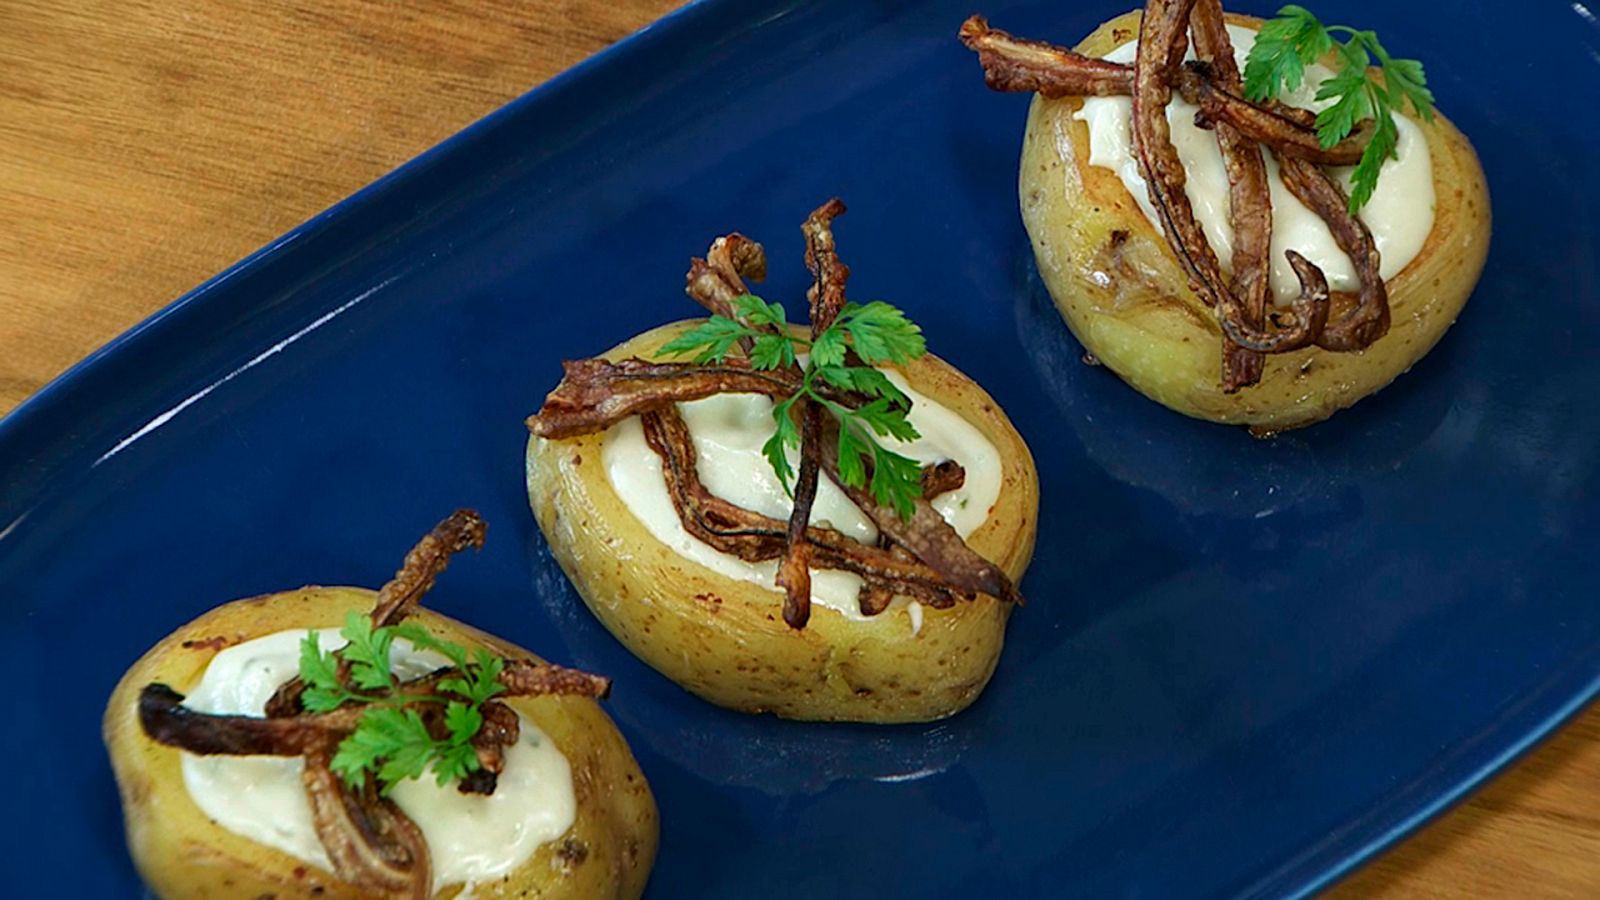 Torres en la cocina - Patatas rellenas de fondue